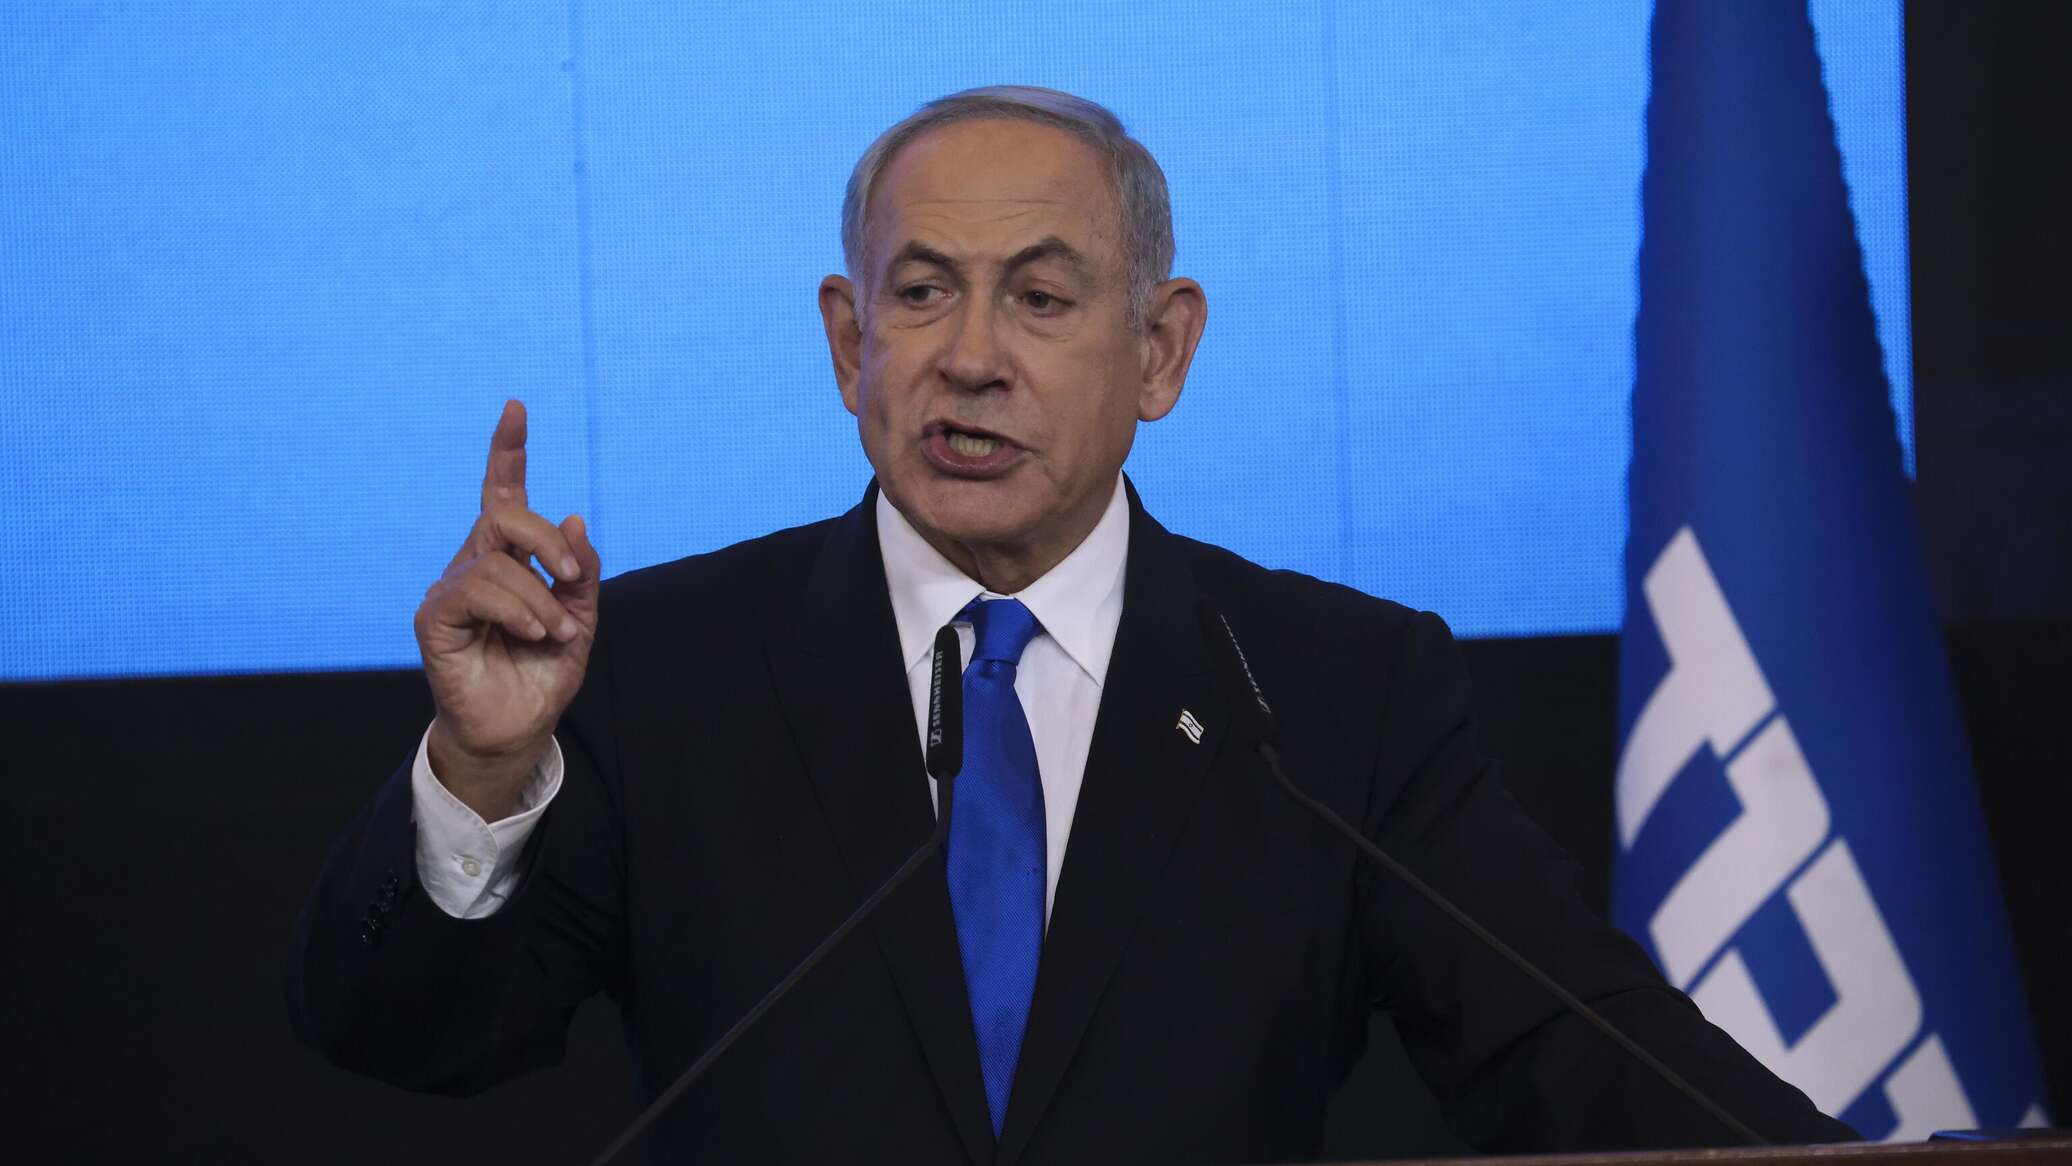 مجلس الوزراء الإسرائيلي يعلن رسميا تشكيل حكومة طوارئ و"مجلس عسكري"